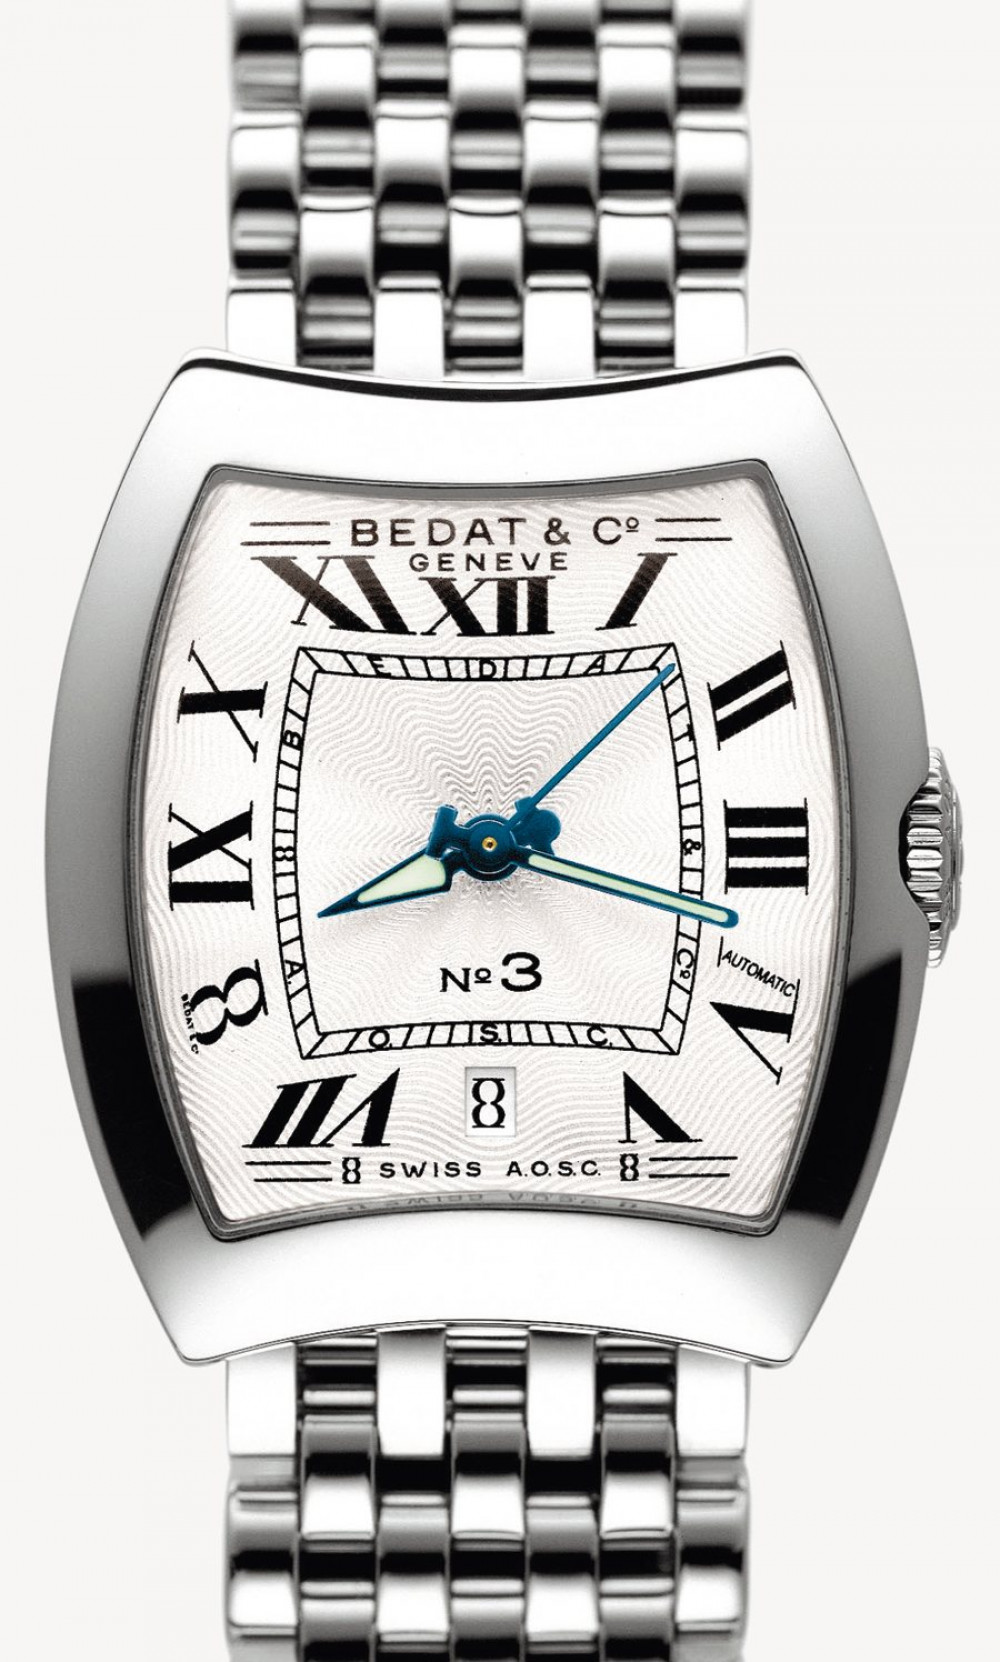 Zegarek firmy Bedat & Co., model N° 3